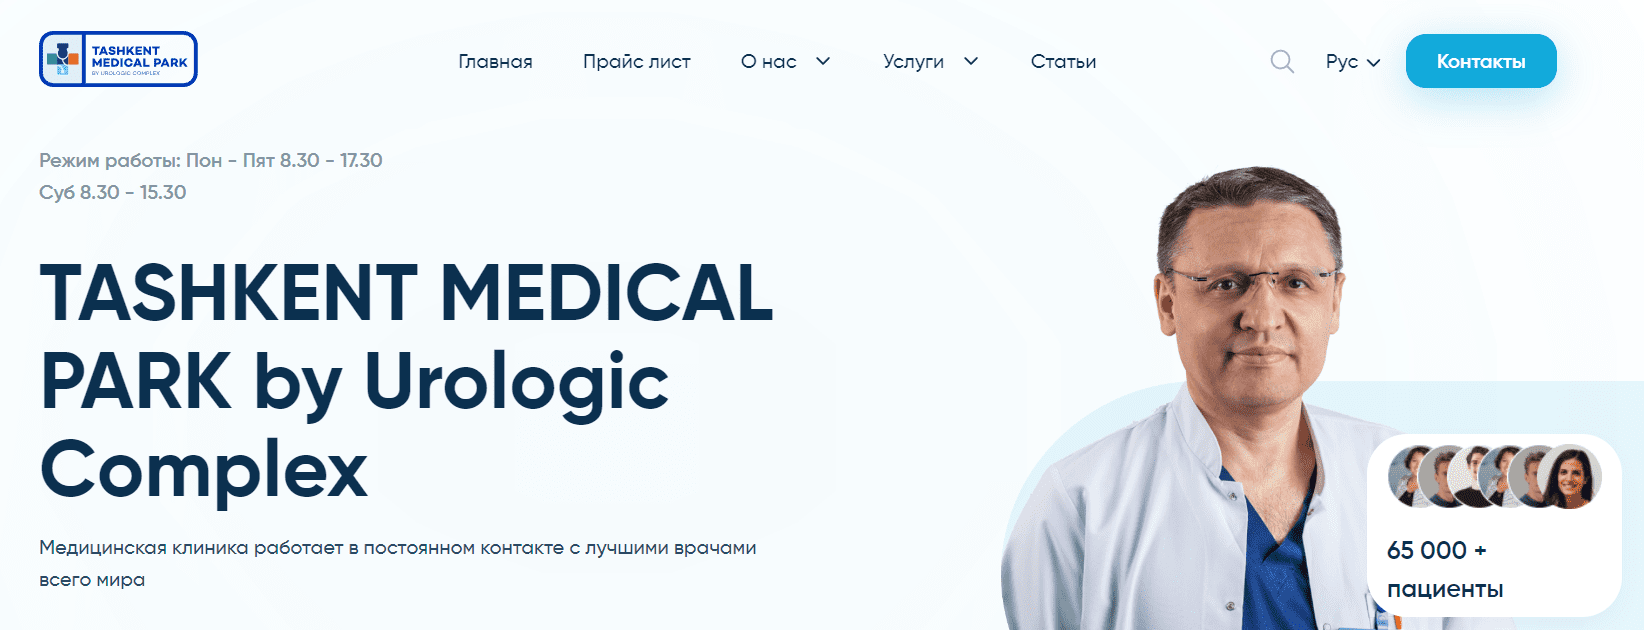 Urologic.uz - официальный сайт